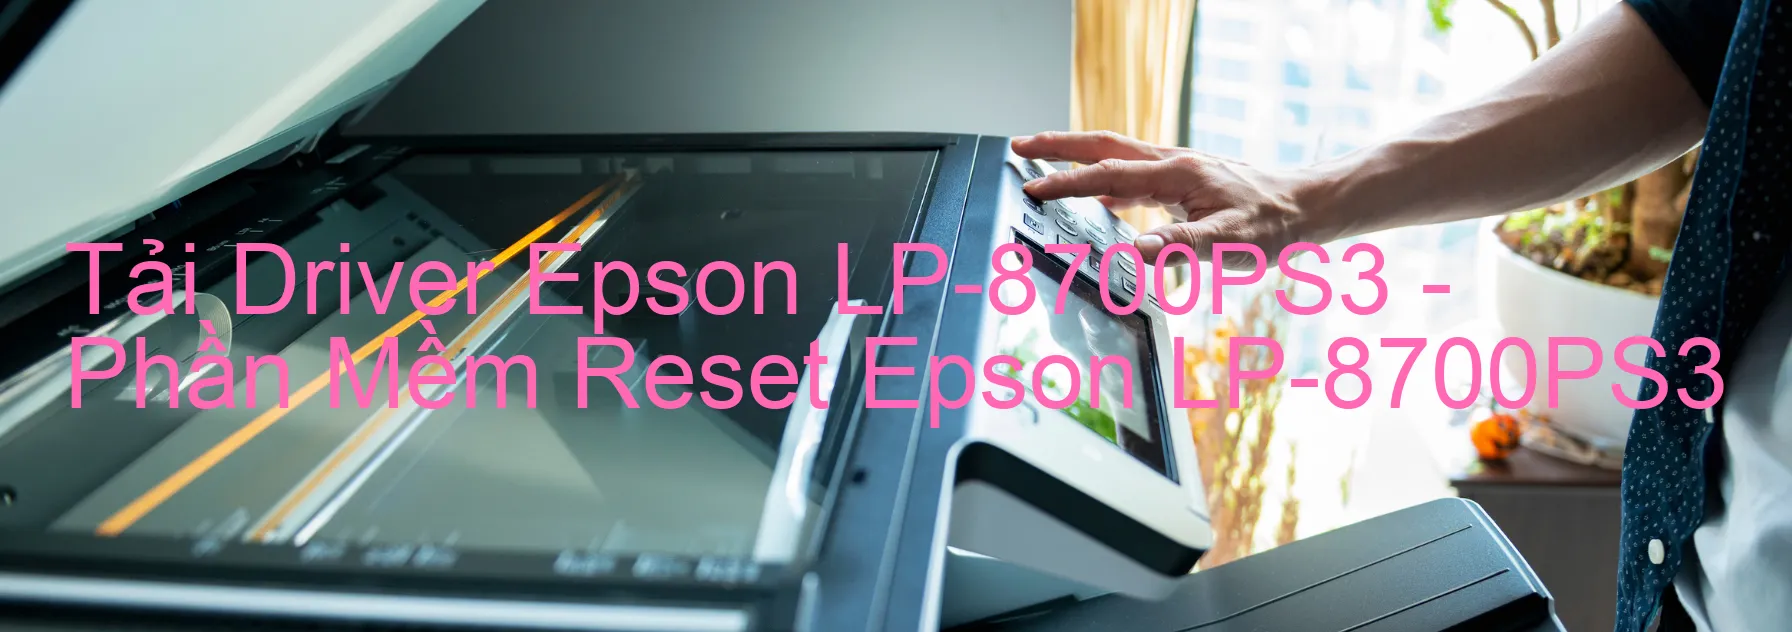 Driver Epson LP-8700PS3, Phần Mềm Reset Epson LP-8700PS3